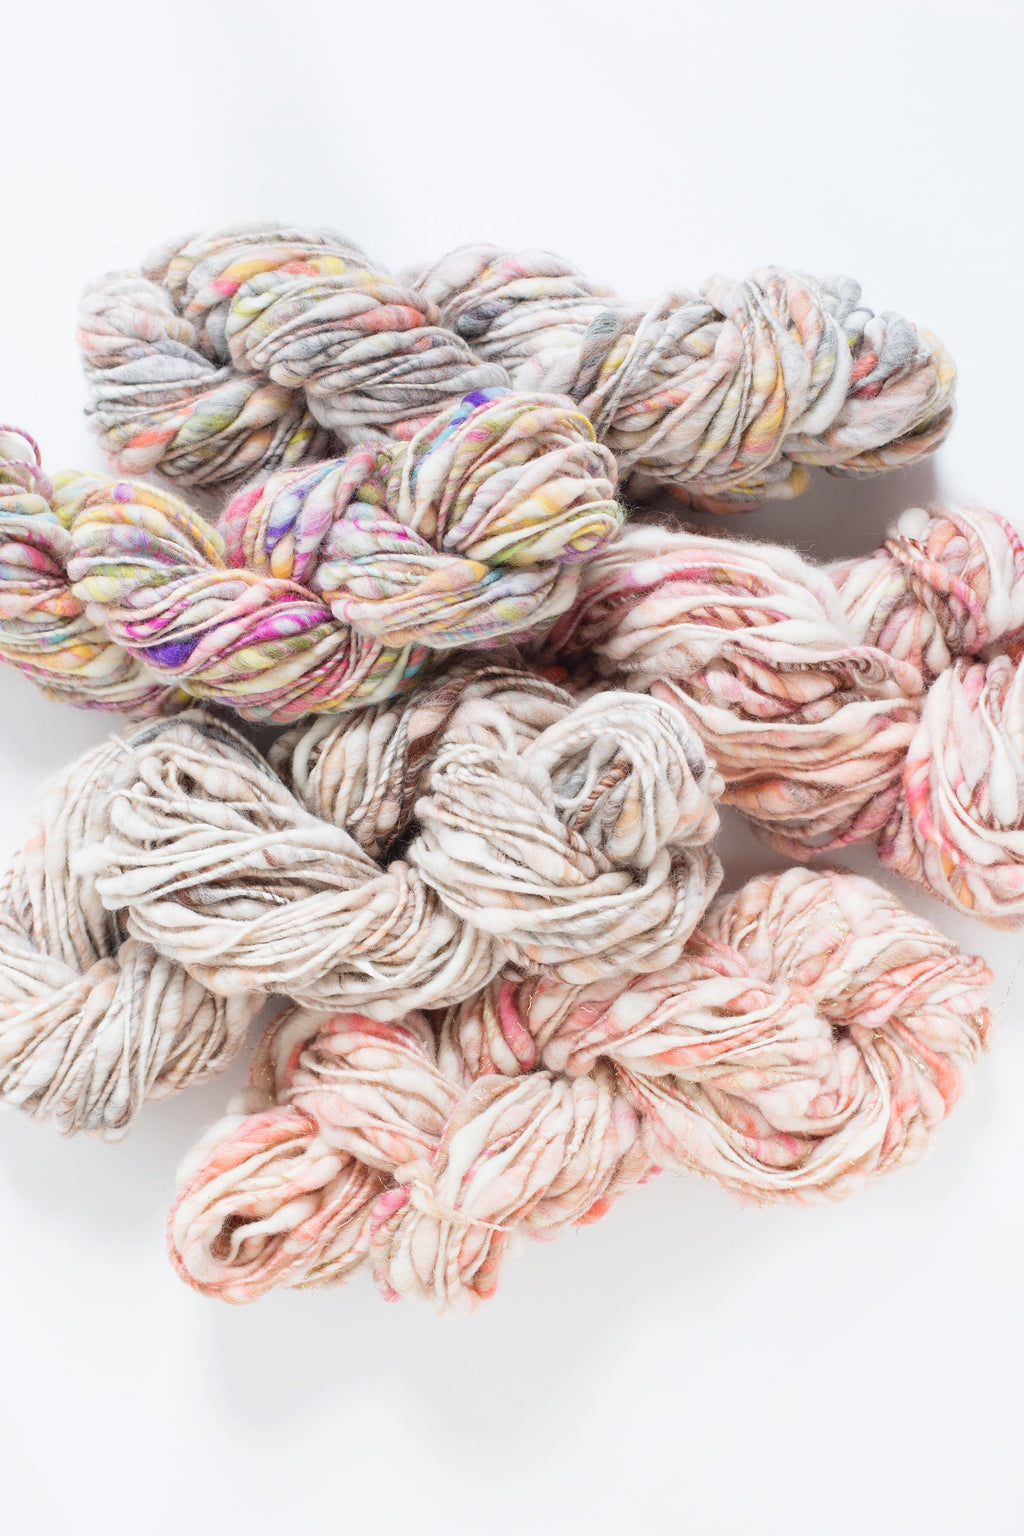 Cast Away Yarn hand knitting yarn - chunky bulky handspun yarn